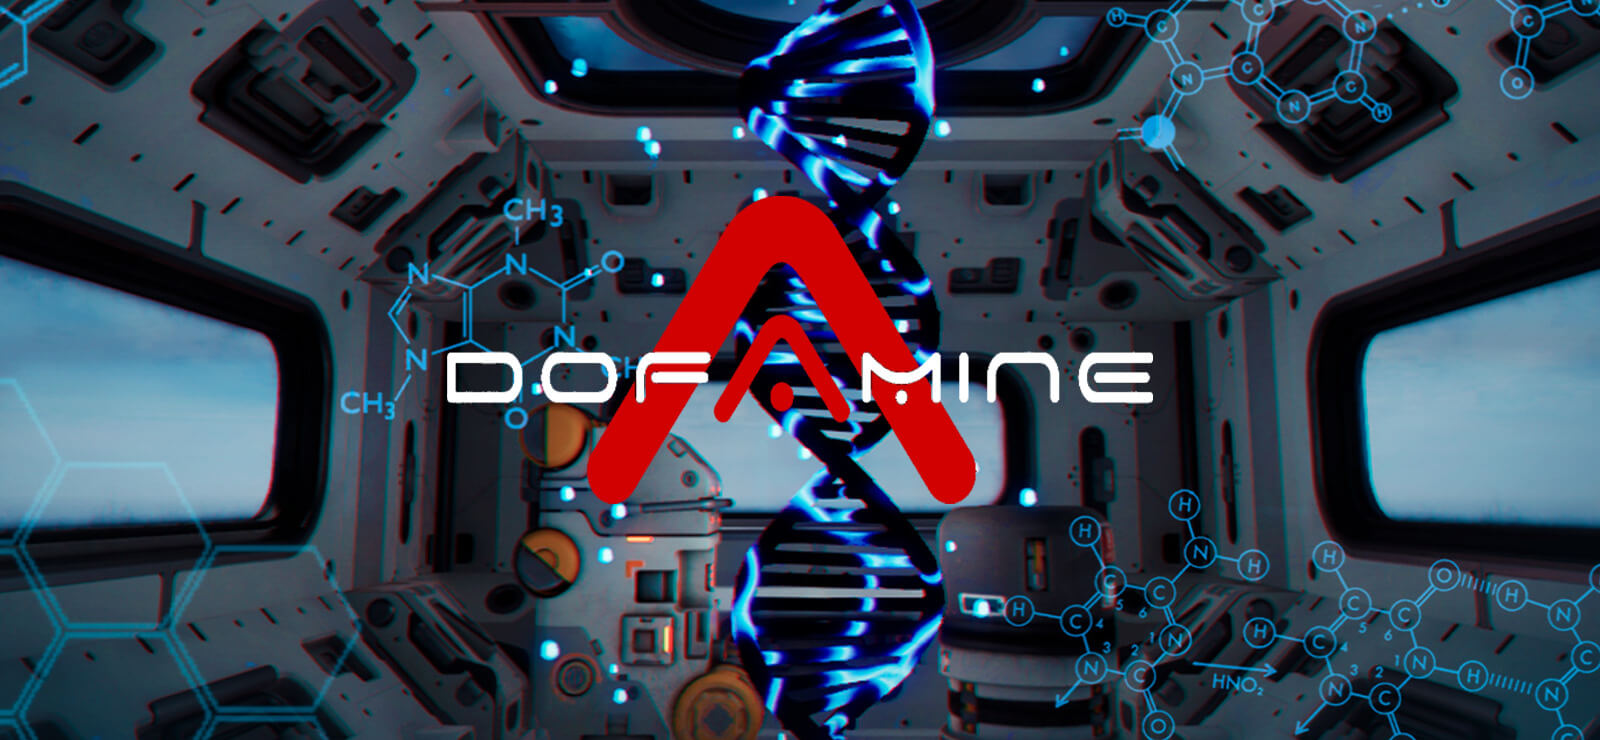 Dofamine bringt neue Sci-Fi-Rätsel auf die Xbox